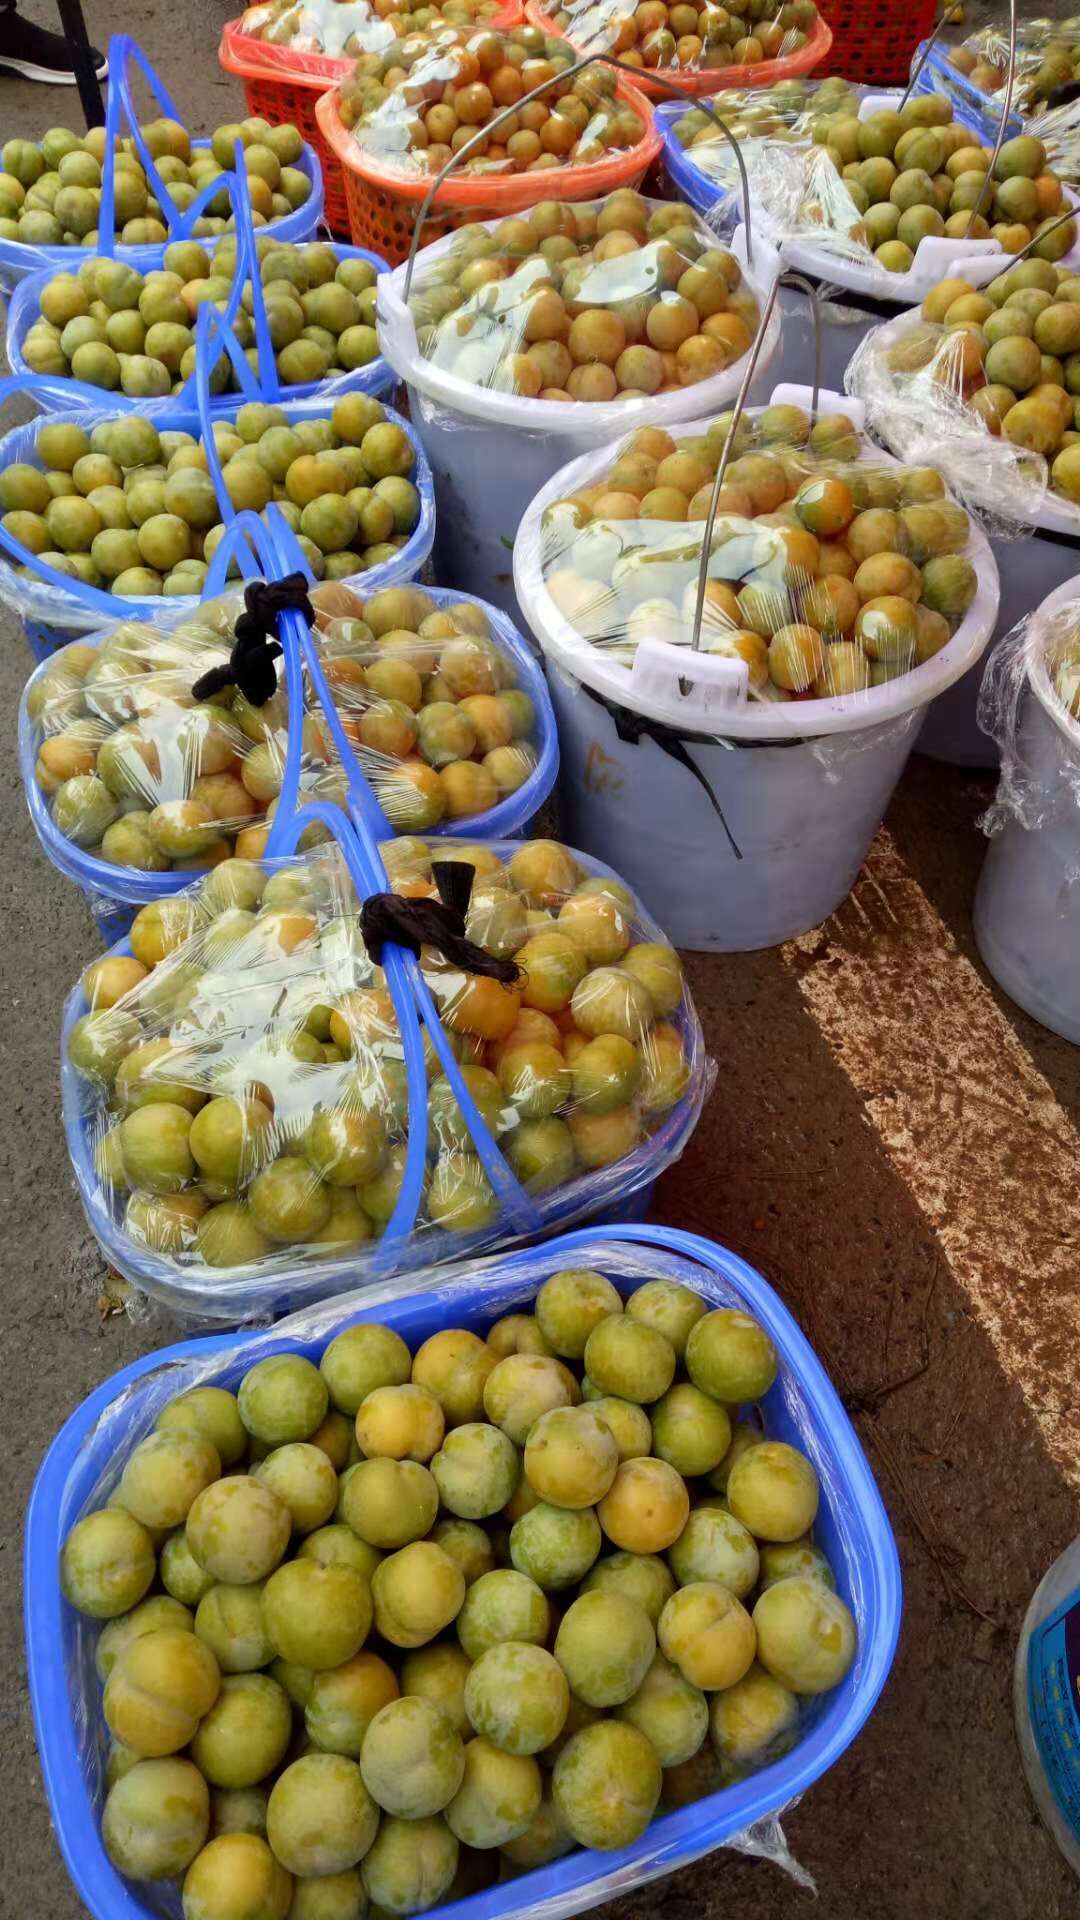 广西玉林蜂糖李苗培育种植基地-广西桂林蜂糖李子苗厂家批发价格图片